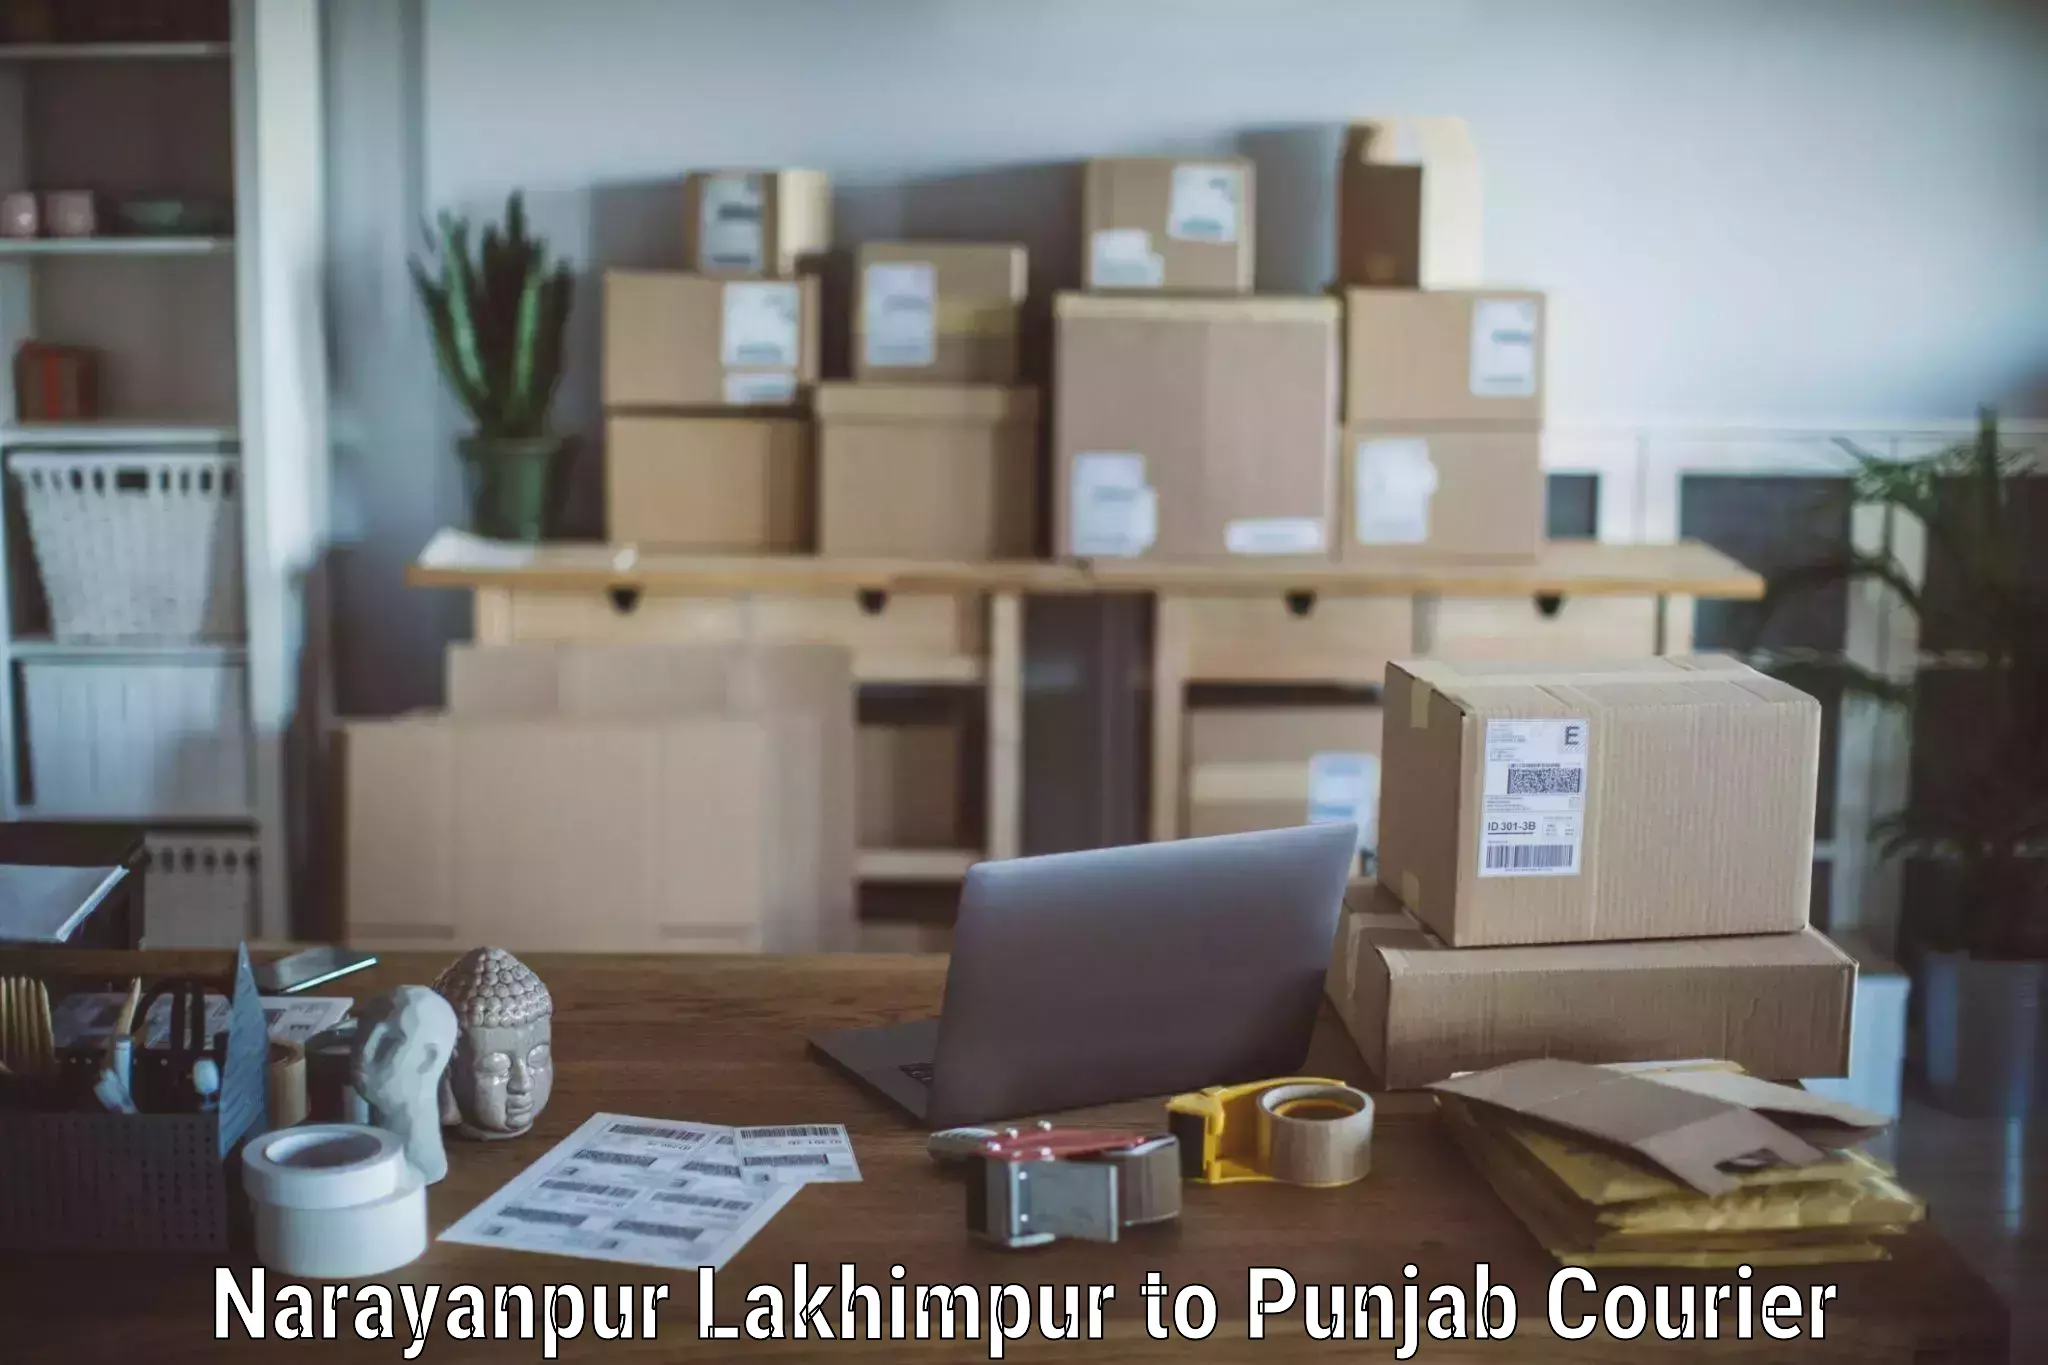 Furniture transport professionals Narayanpur Lakhimpur to Amritsar